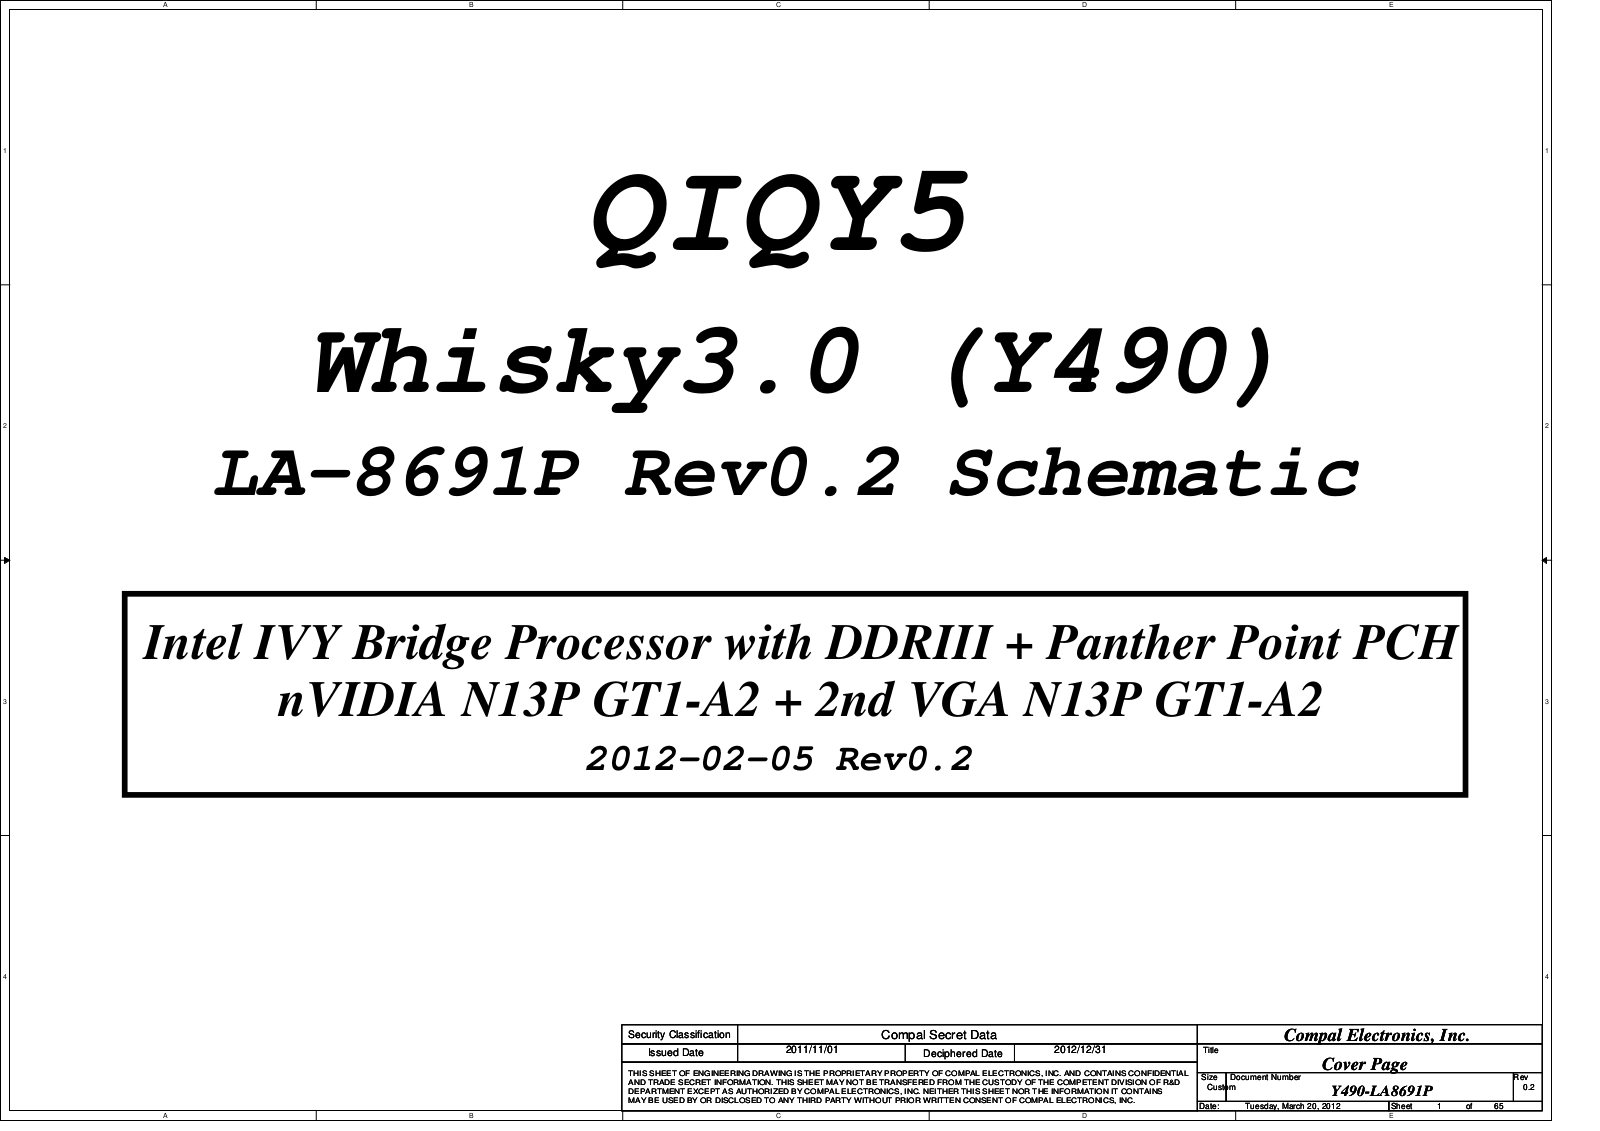 Compal LA-8691P QIQY5 Whisky3.0, IdeaPad Y400, IdeaPad Y500, IdeaPad Y490 Schematic